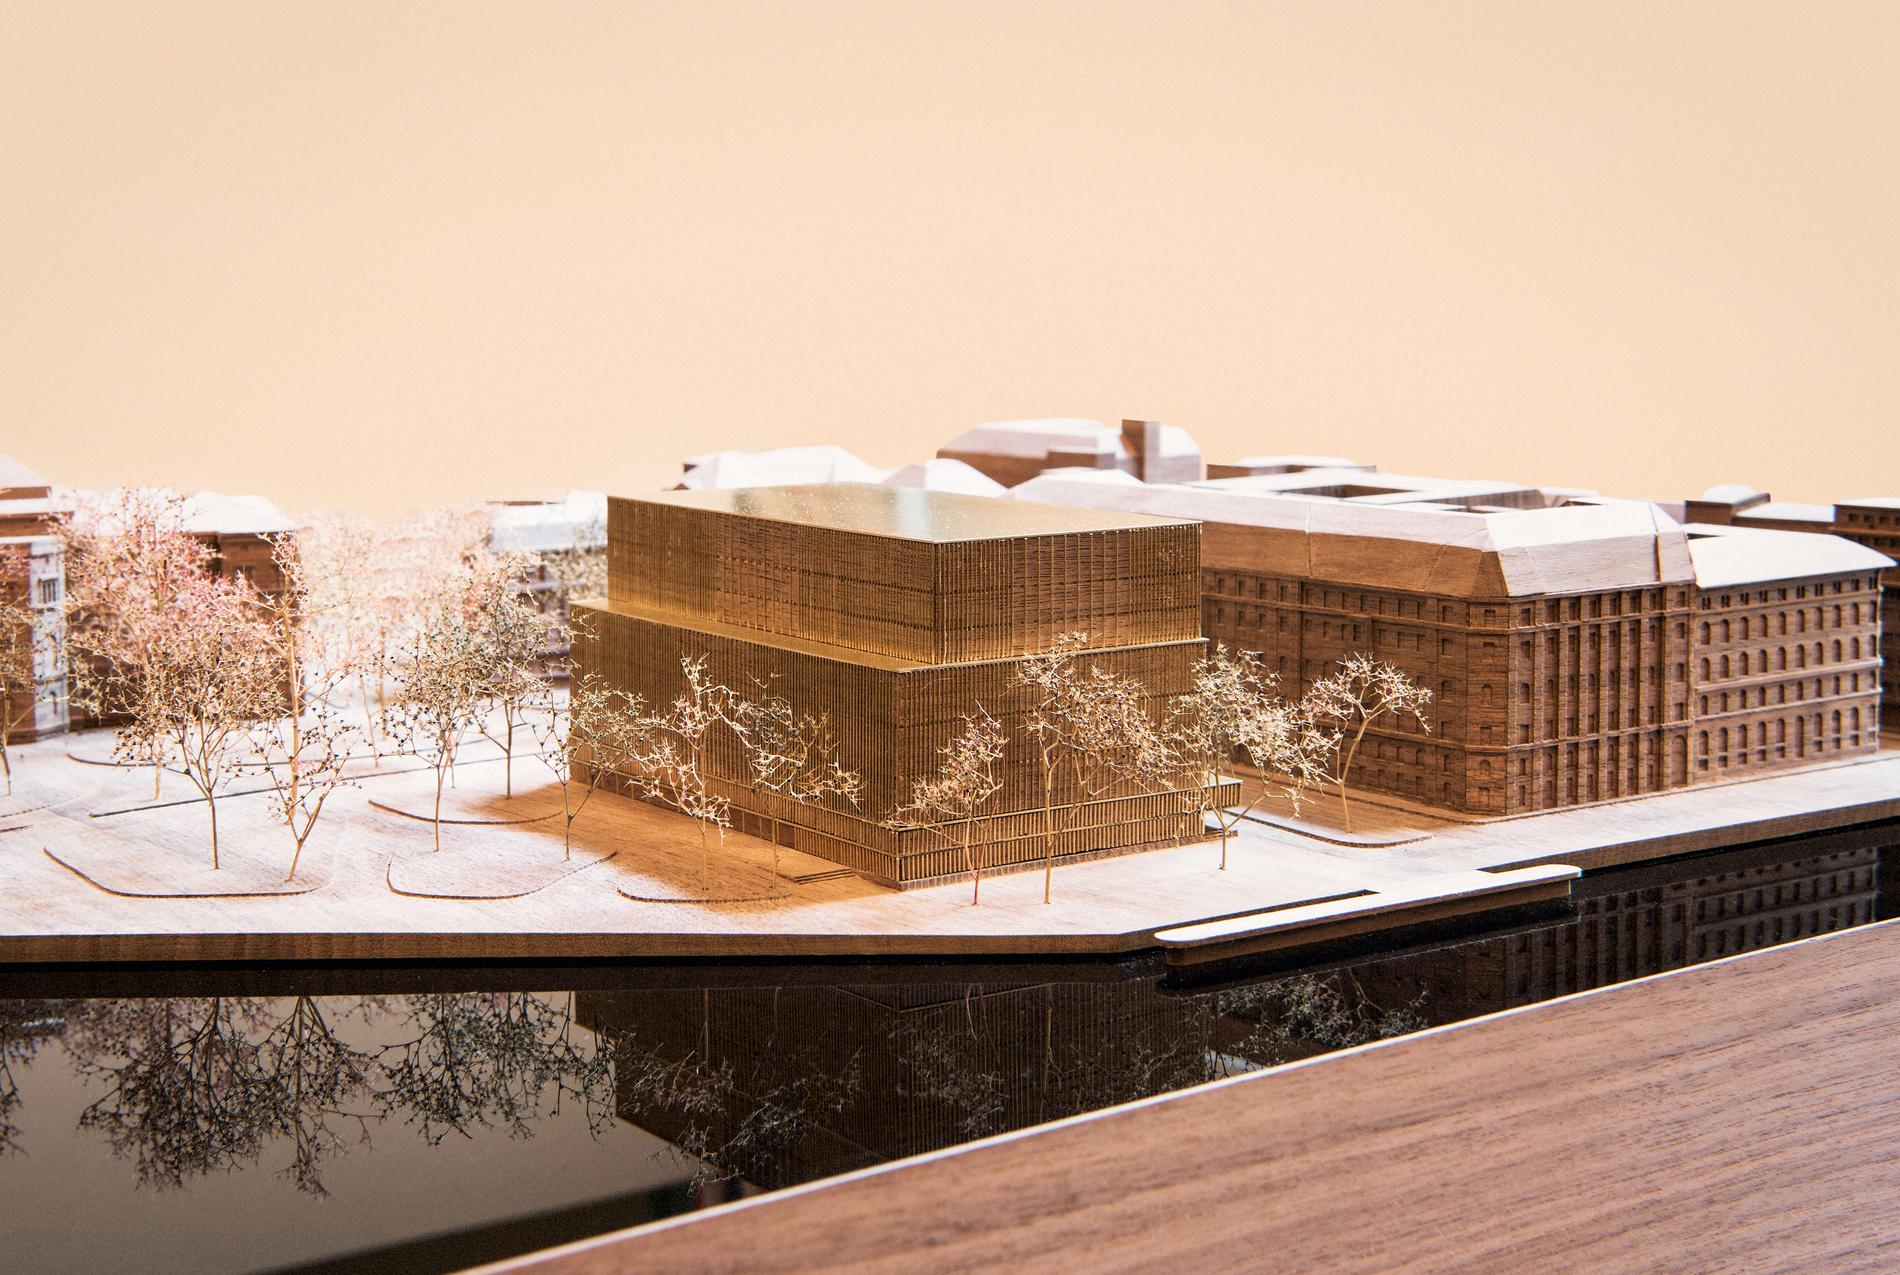 En arkitekturmodell av Nobelcenter på Blasieholmen i Stockholm, såsom förslaget såg ut i juni 2016. Nobelcenter i förgrunden.